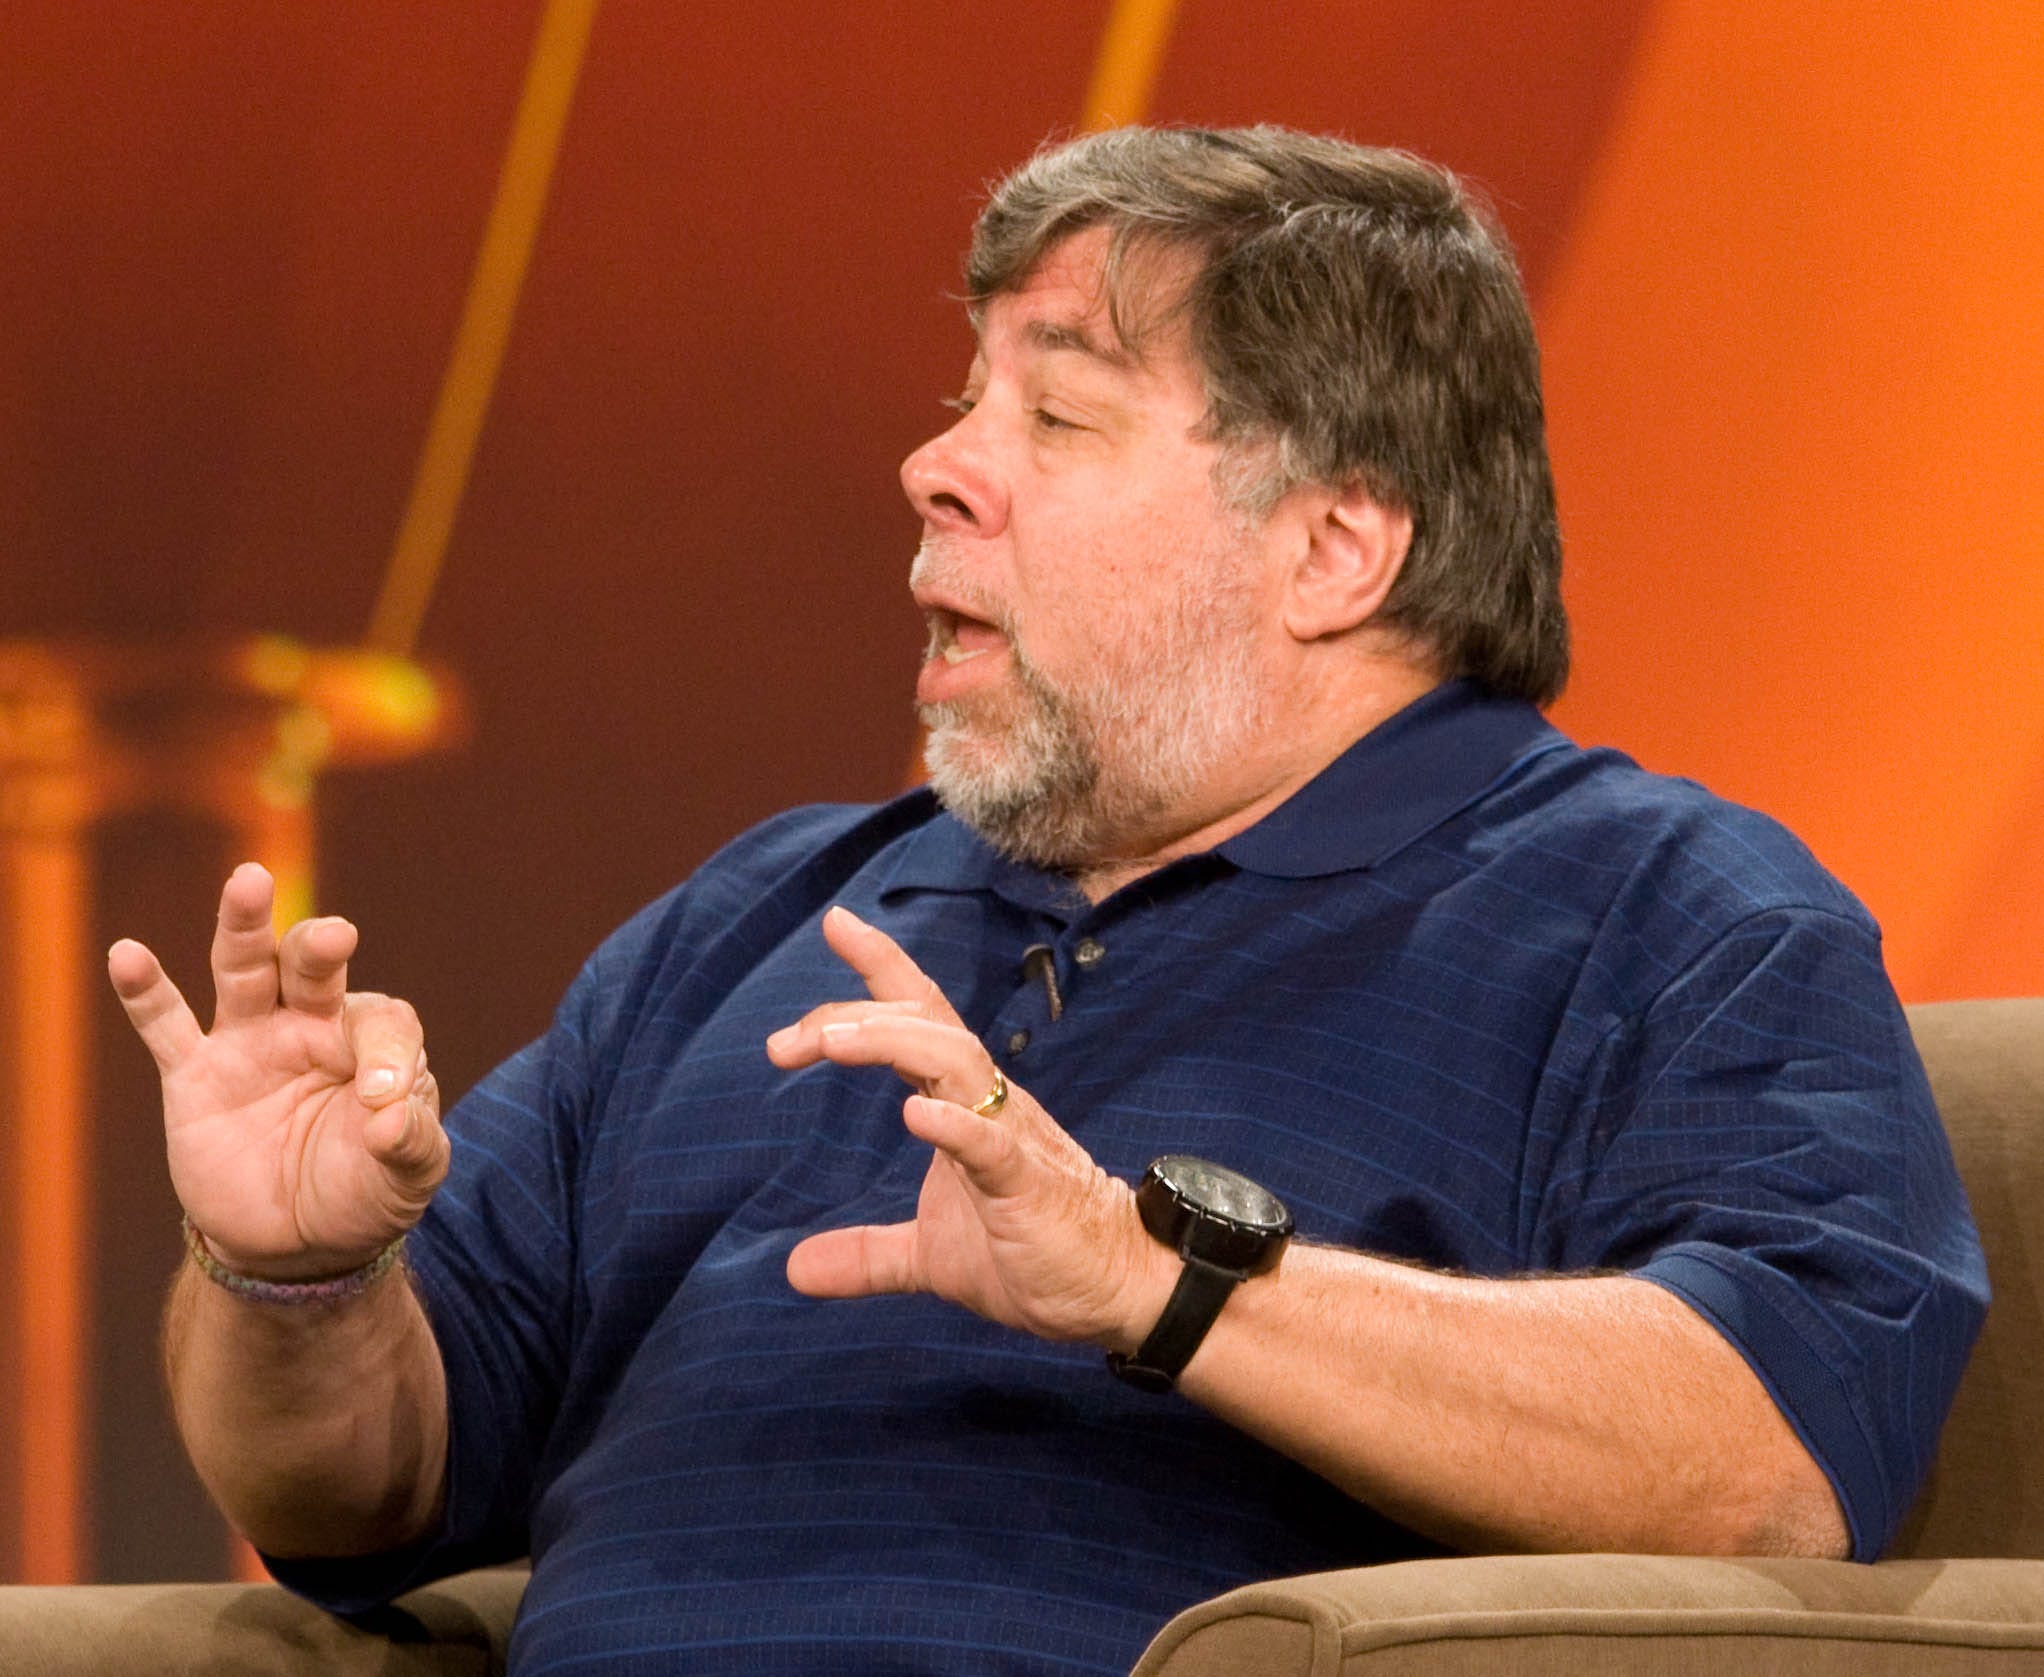 Apple co-founder Steve Wozniak at the Intel Developer Forum.